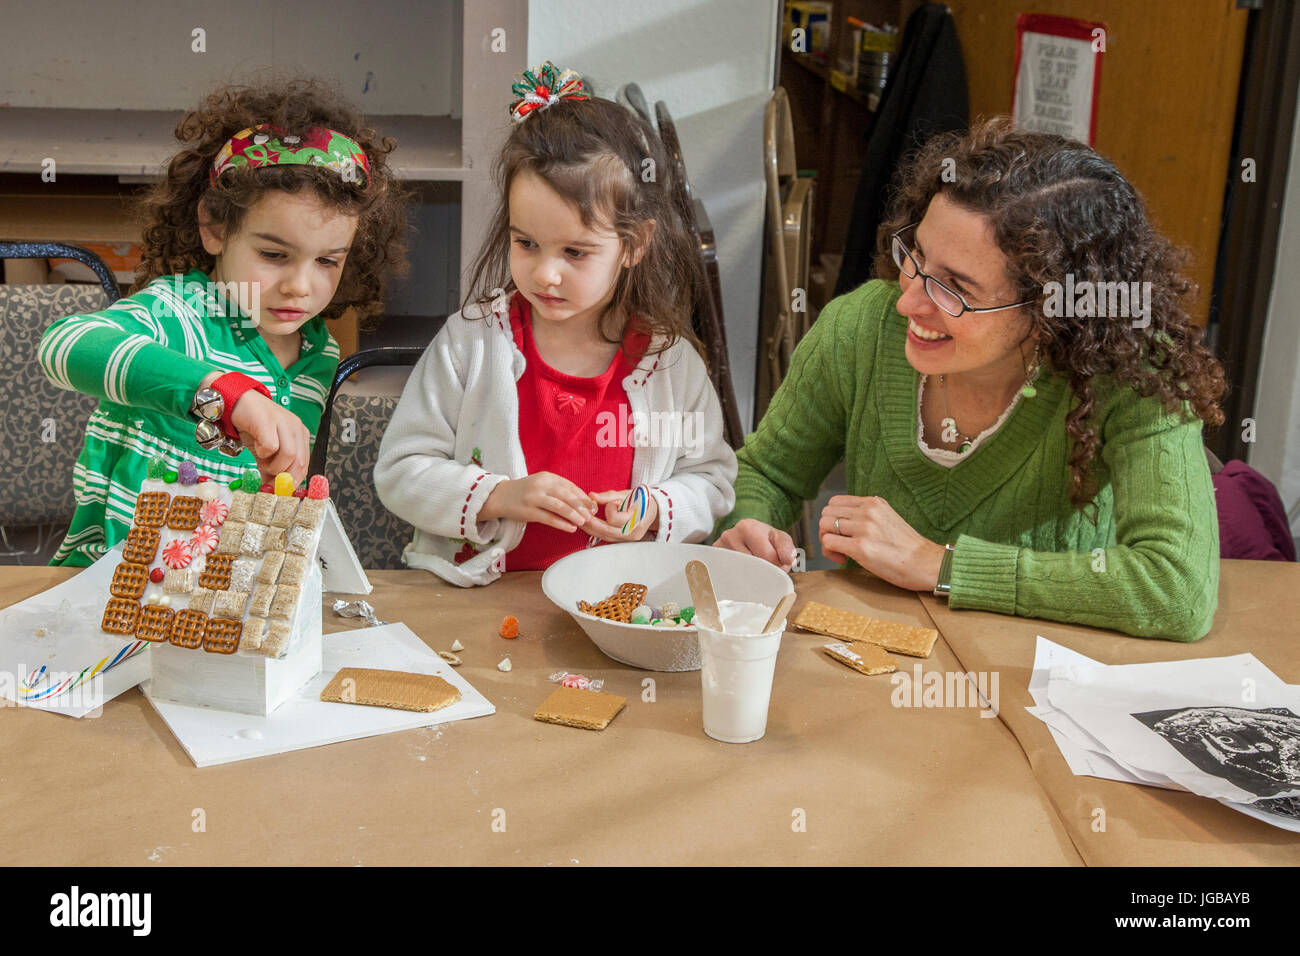 Eine Frau, die kleinen Kindern mit einem Kunstprojekt hilft Stockfoto